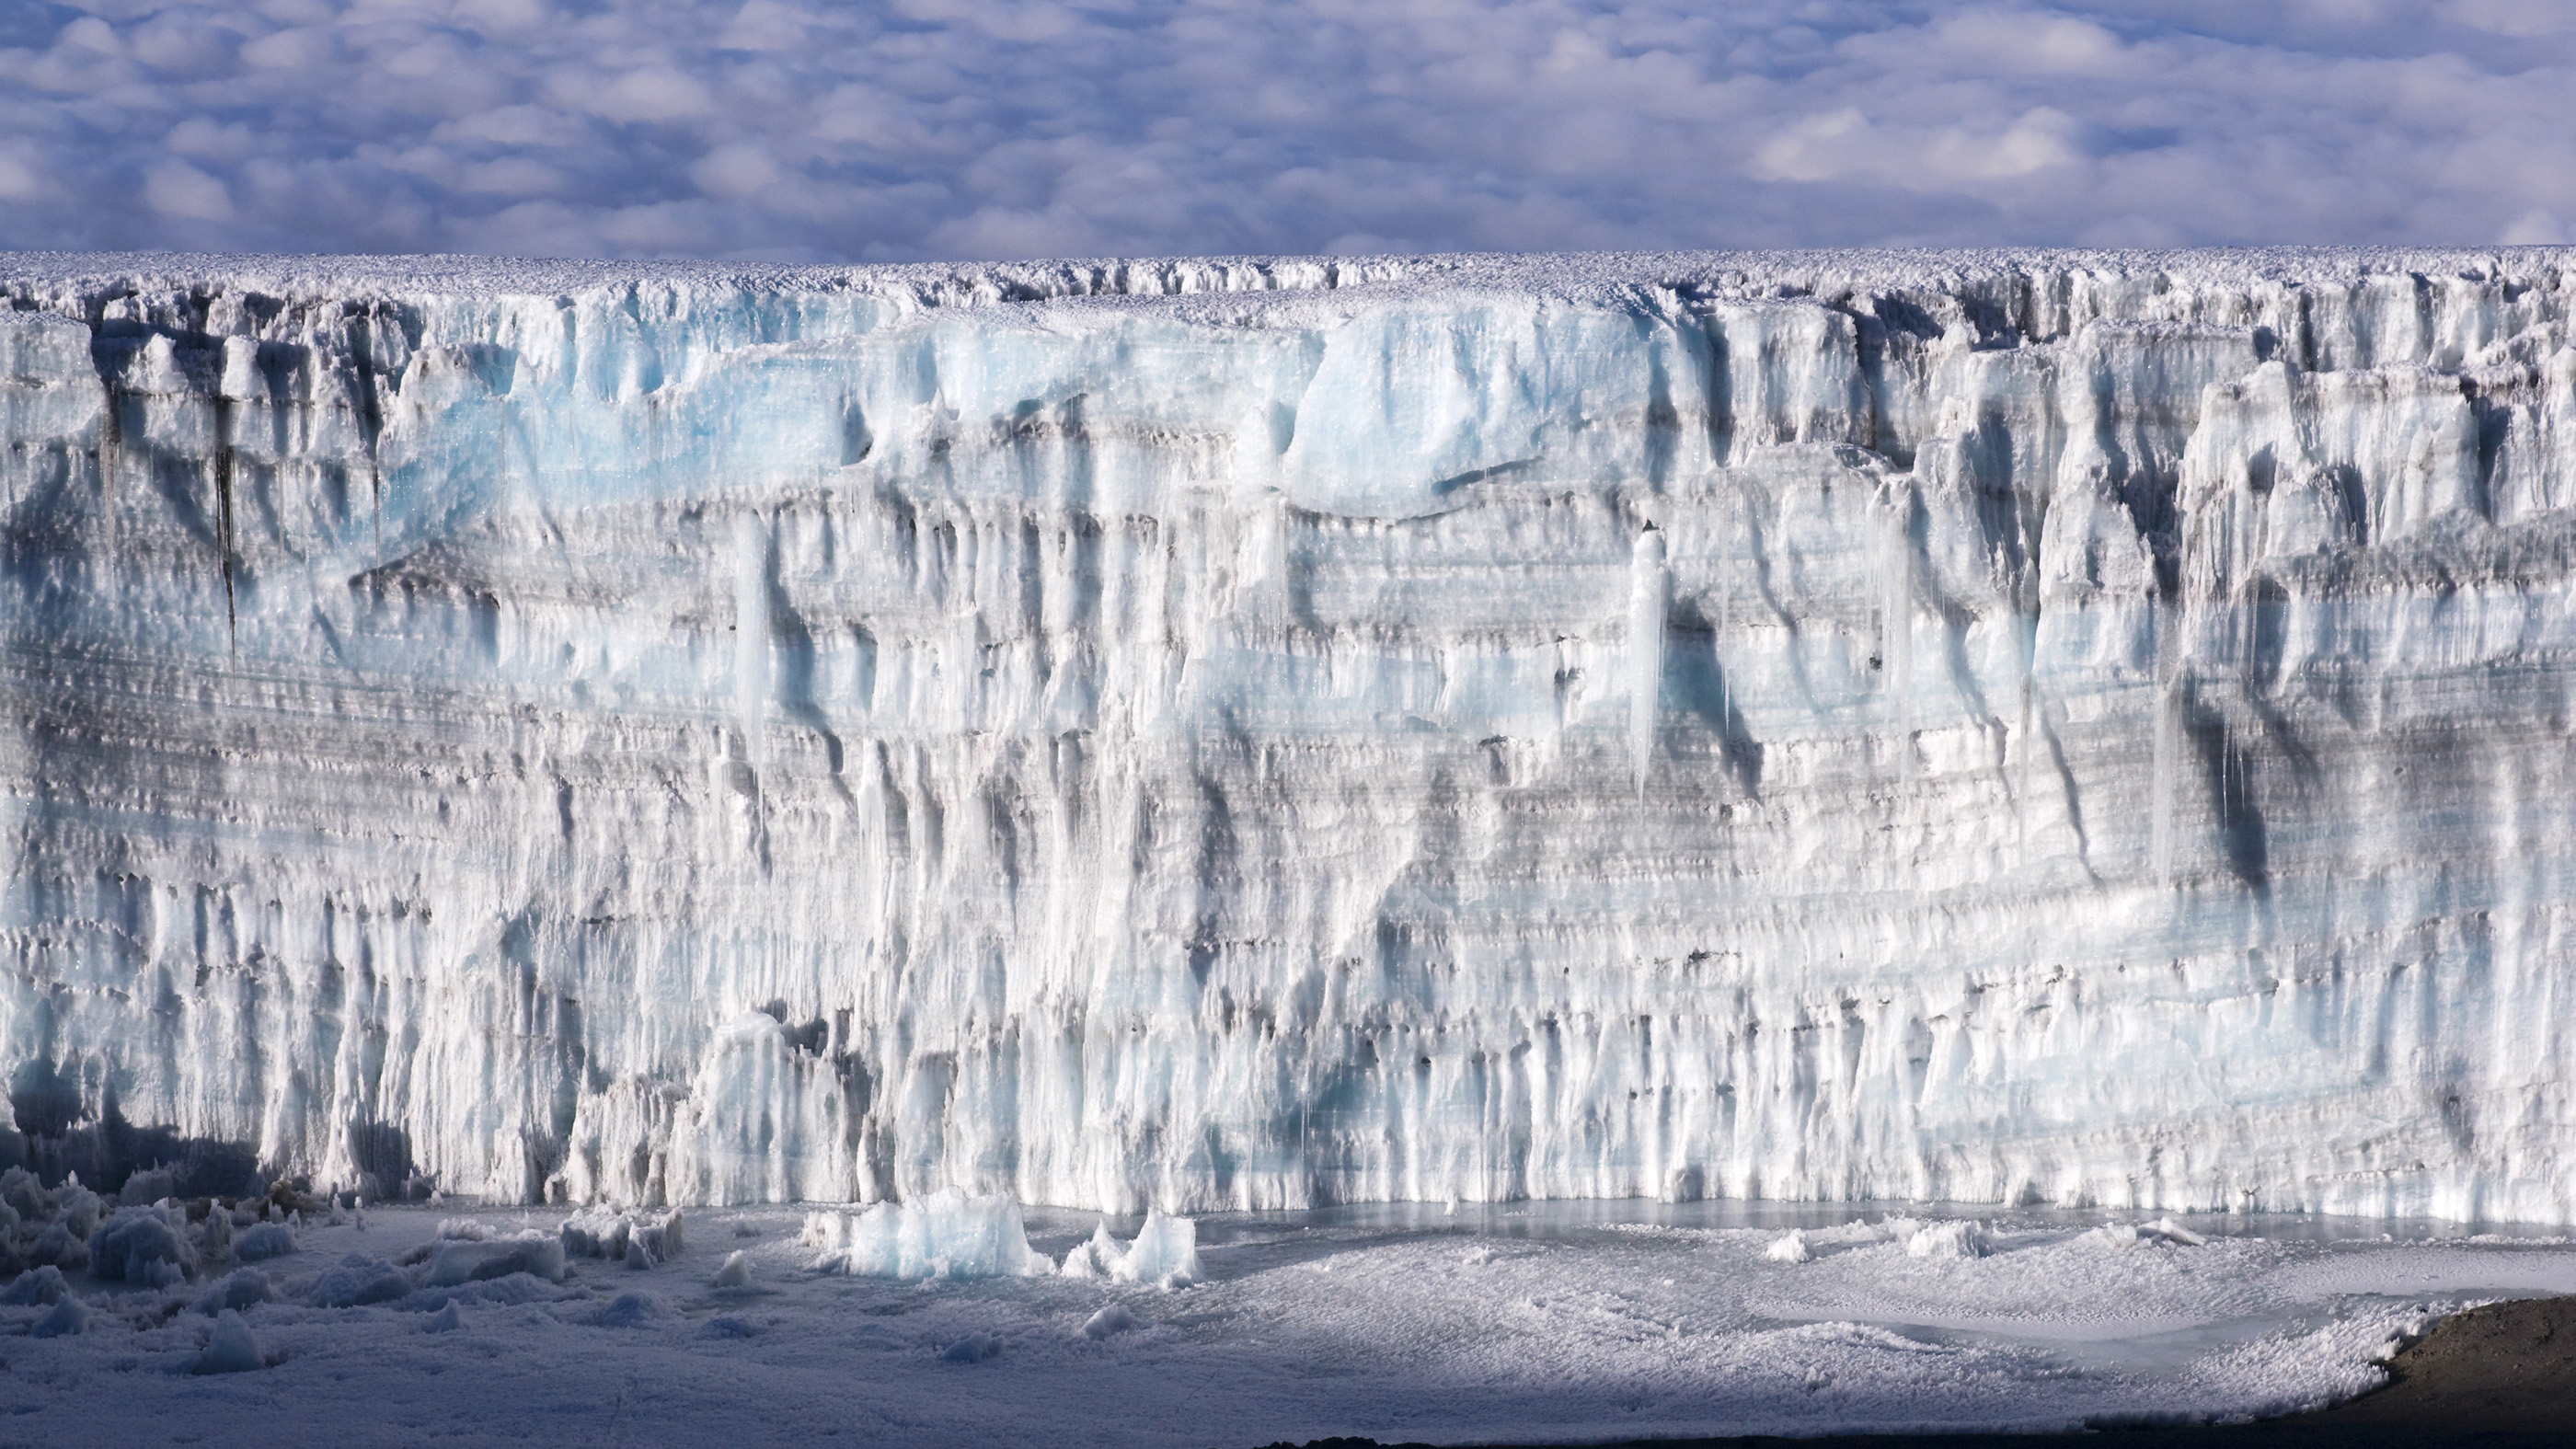 Giant ice wall